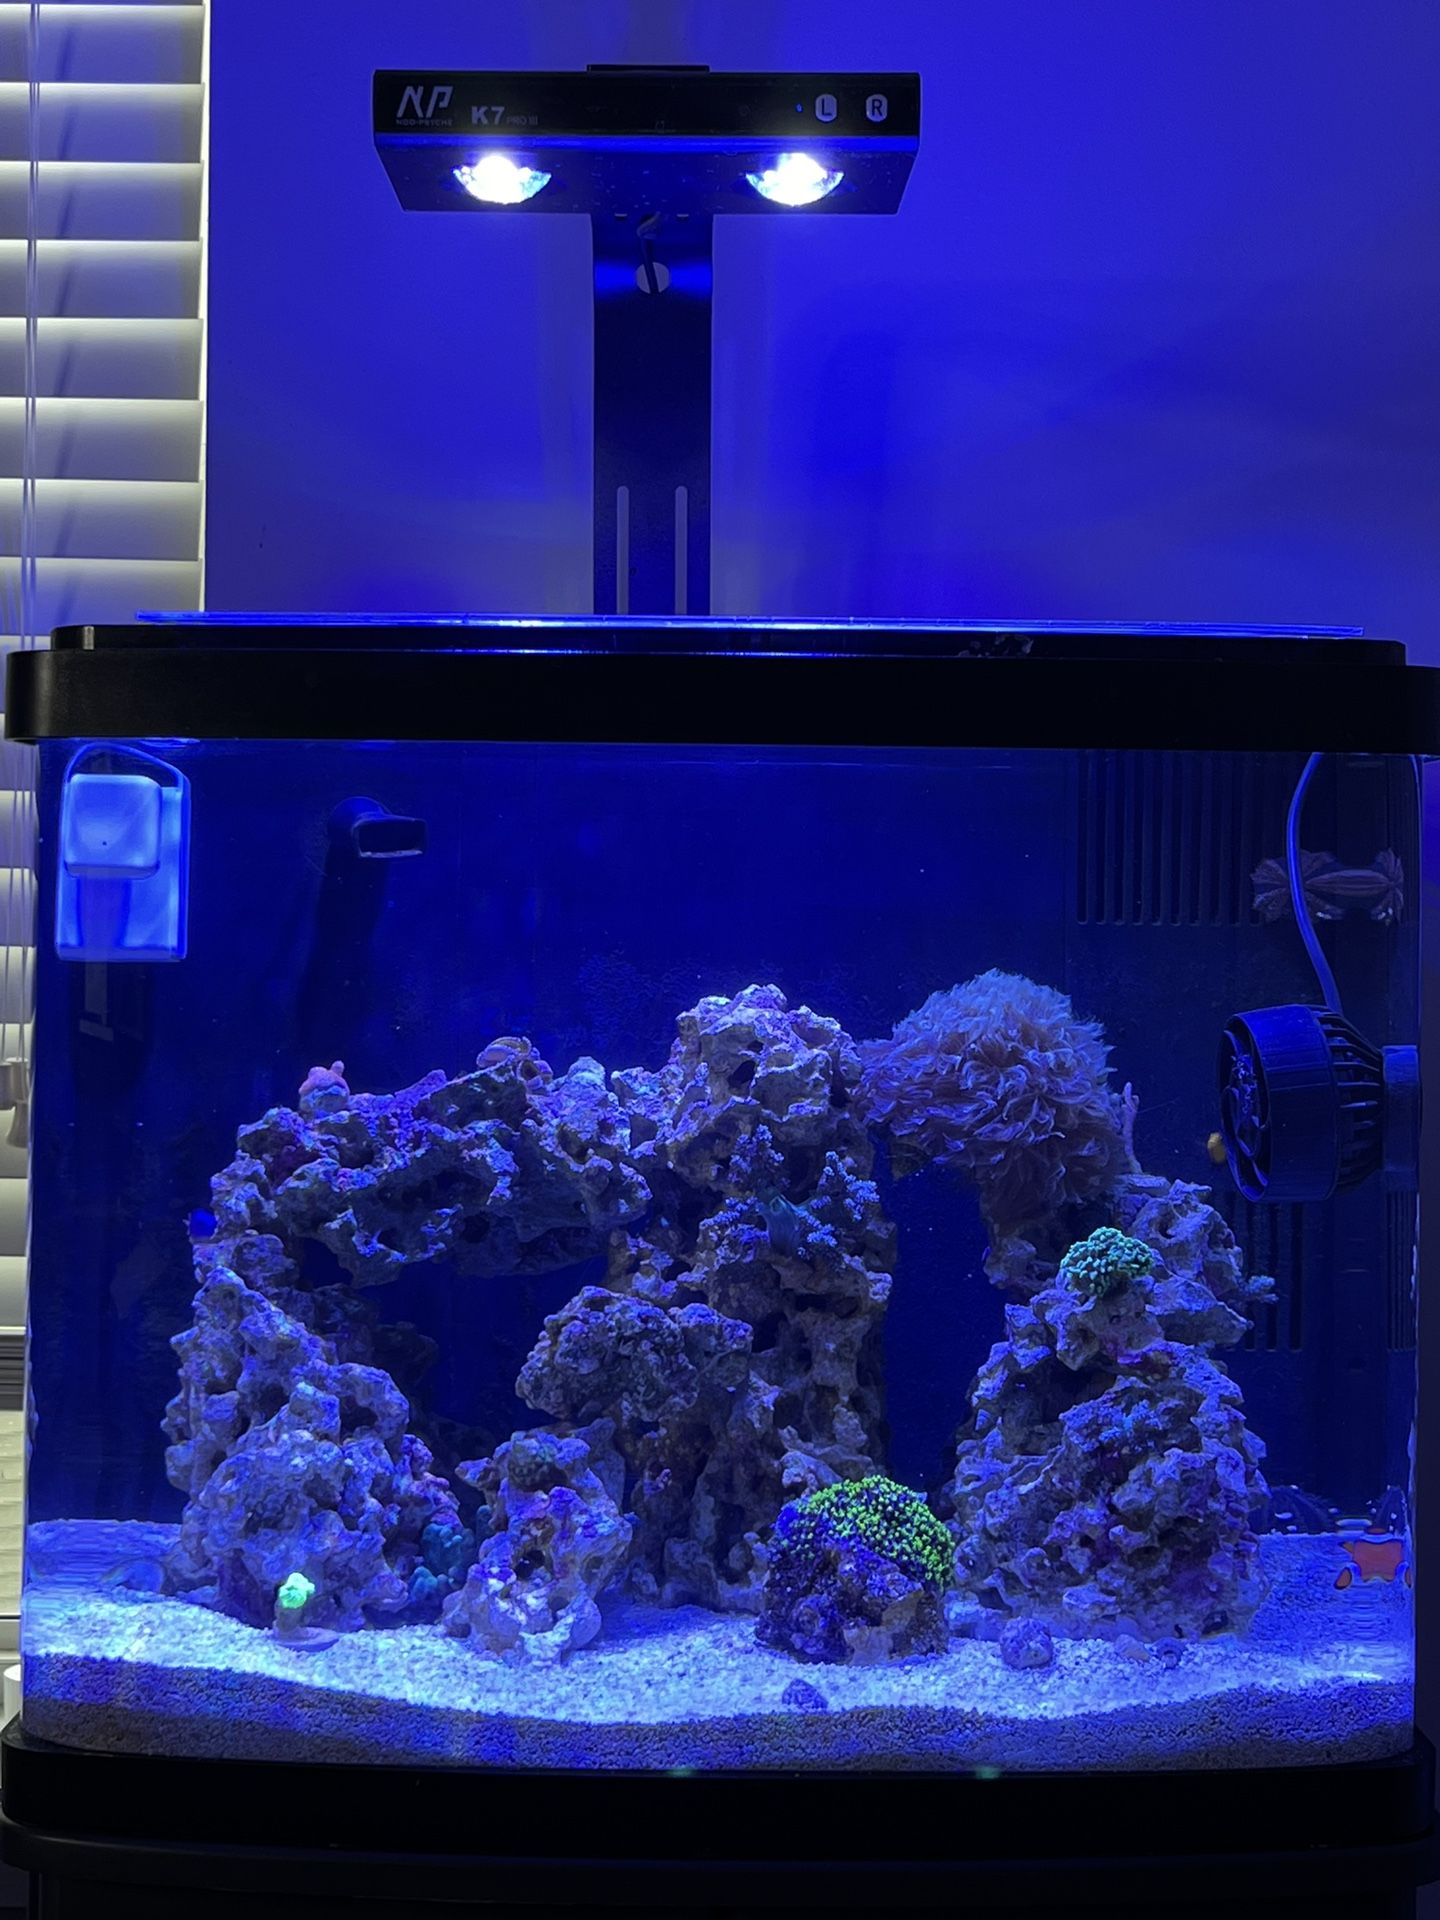 BIOCUBE - 29 - Saltwater aquarium - Fish tank